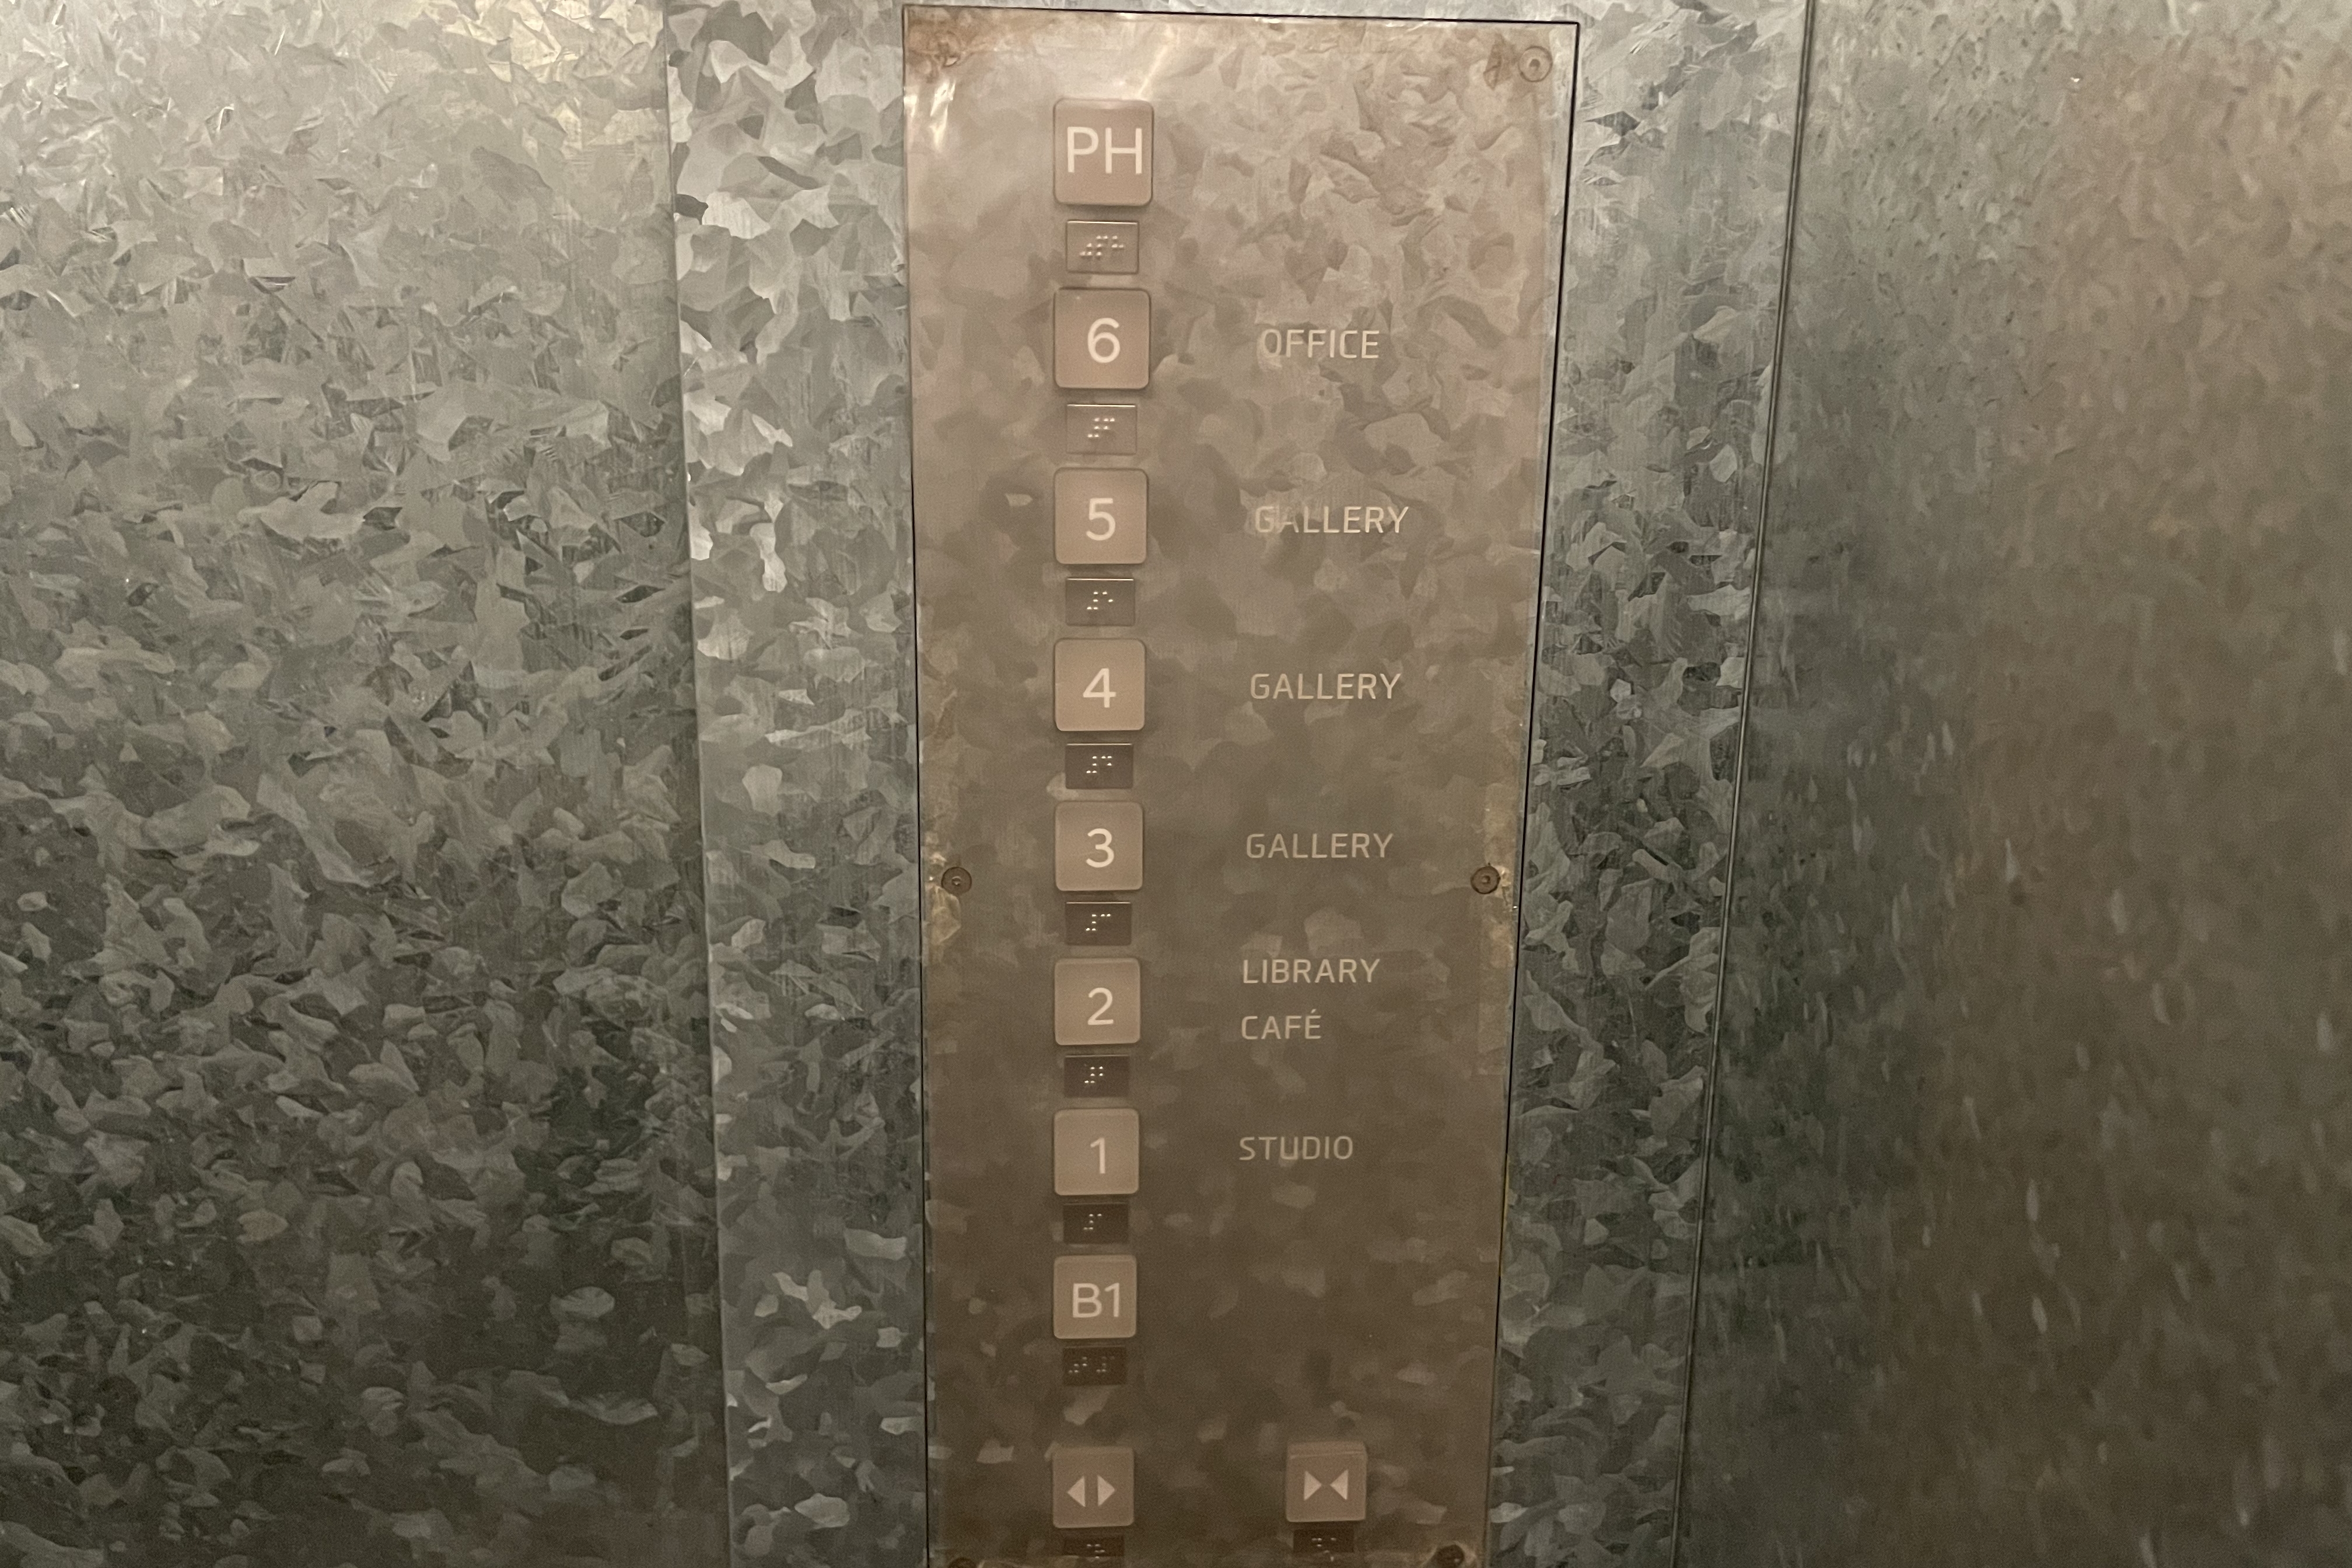 엘리베이터0 : 현대모터스튜디오 엘리베이터 내부